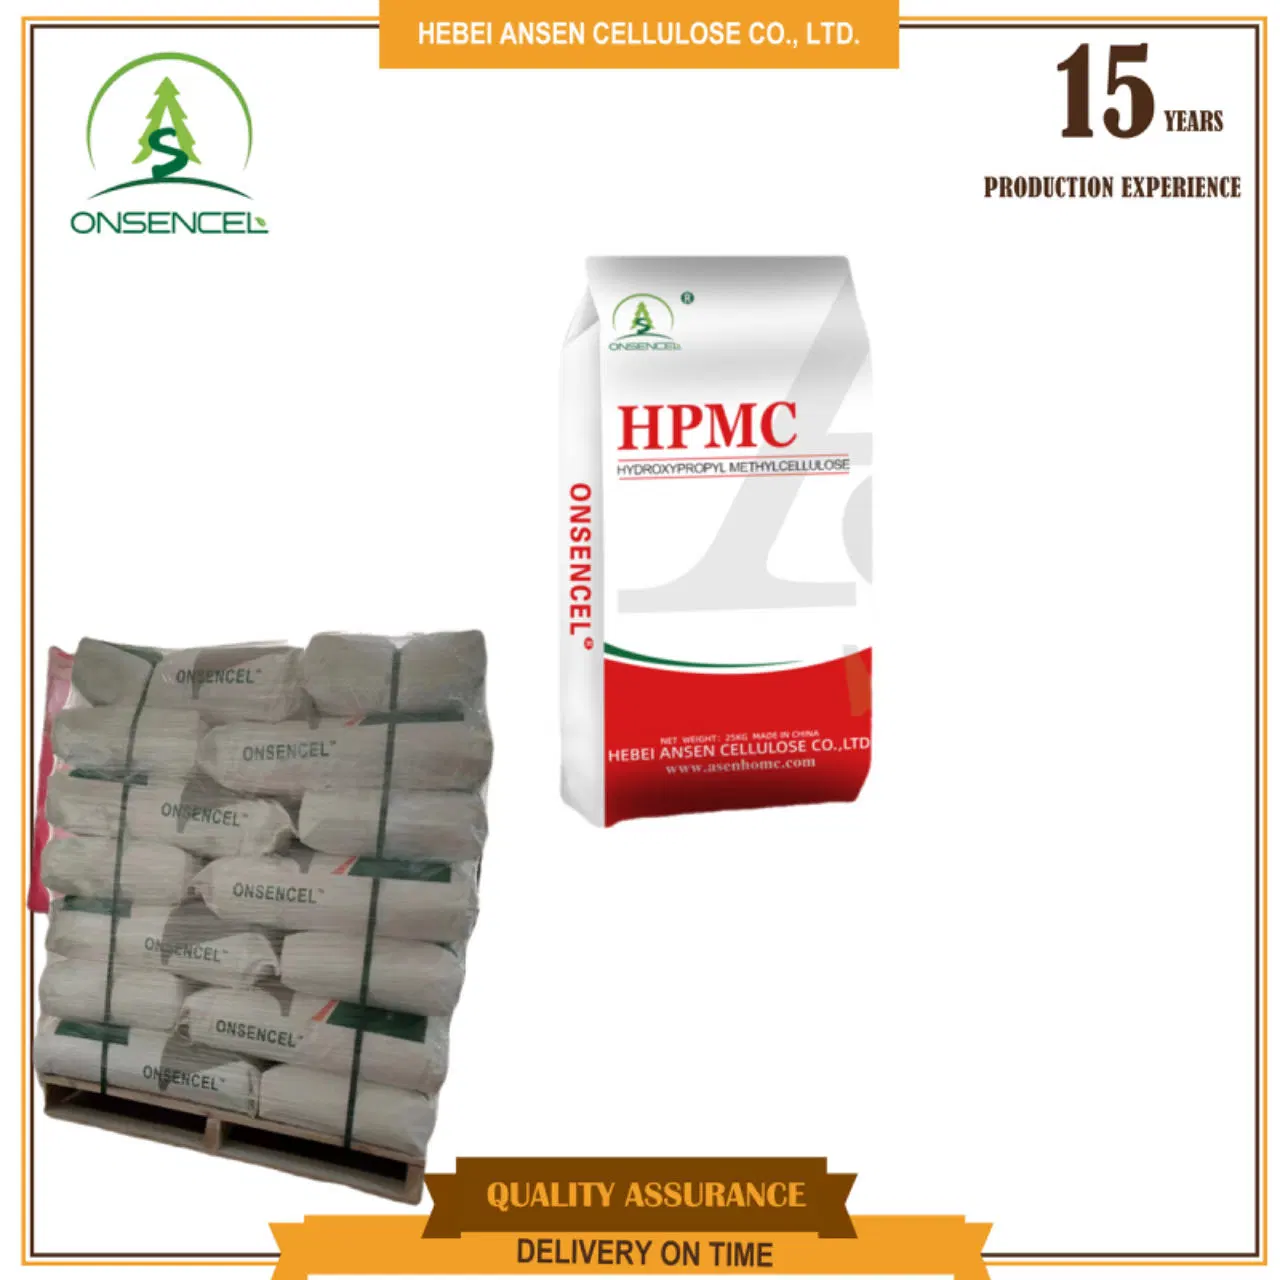 Coton cellulose HPMC 200000 100000 CPS Price produits chimiques matières premières Industriel